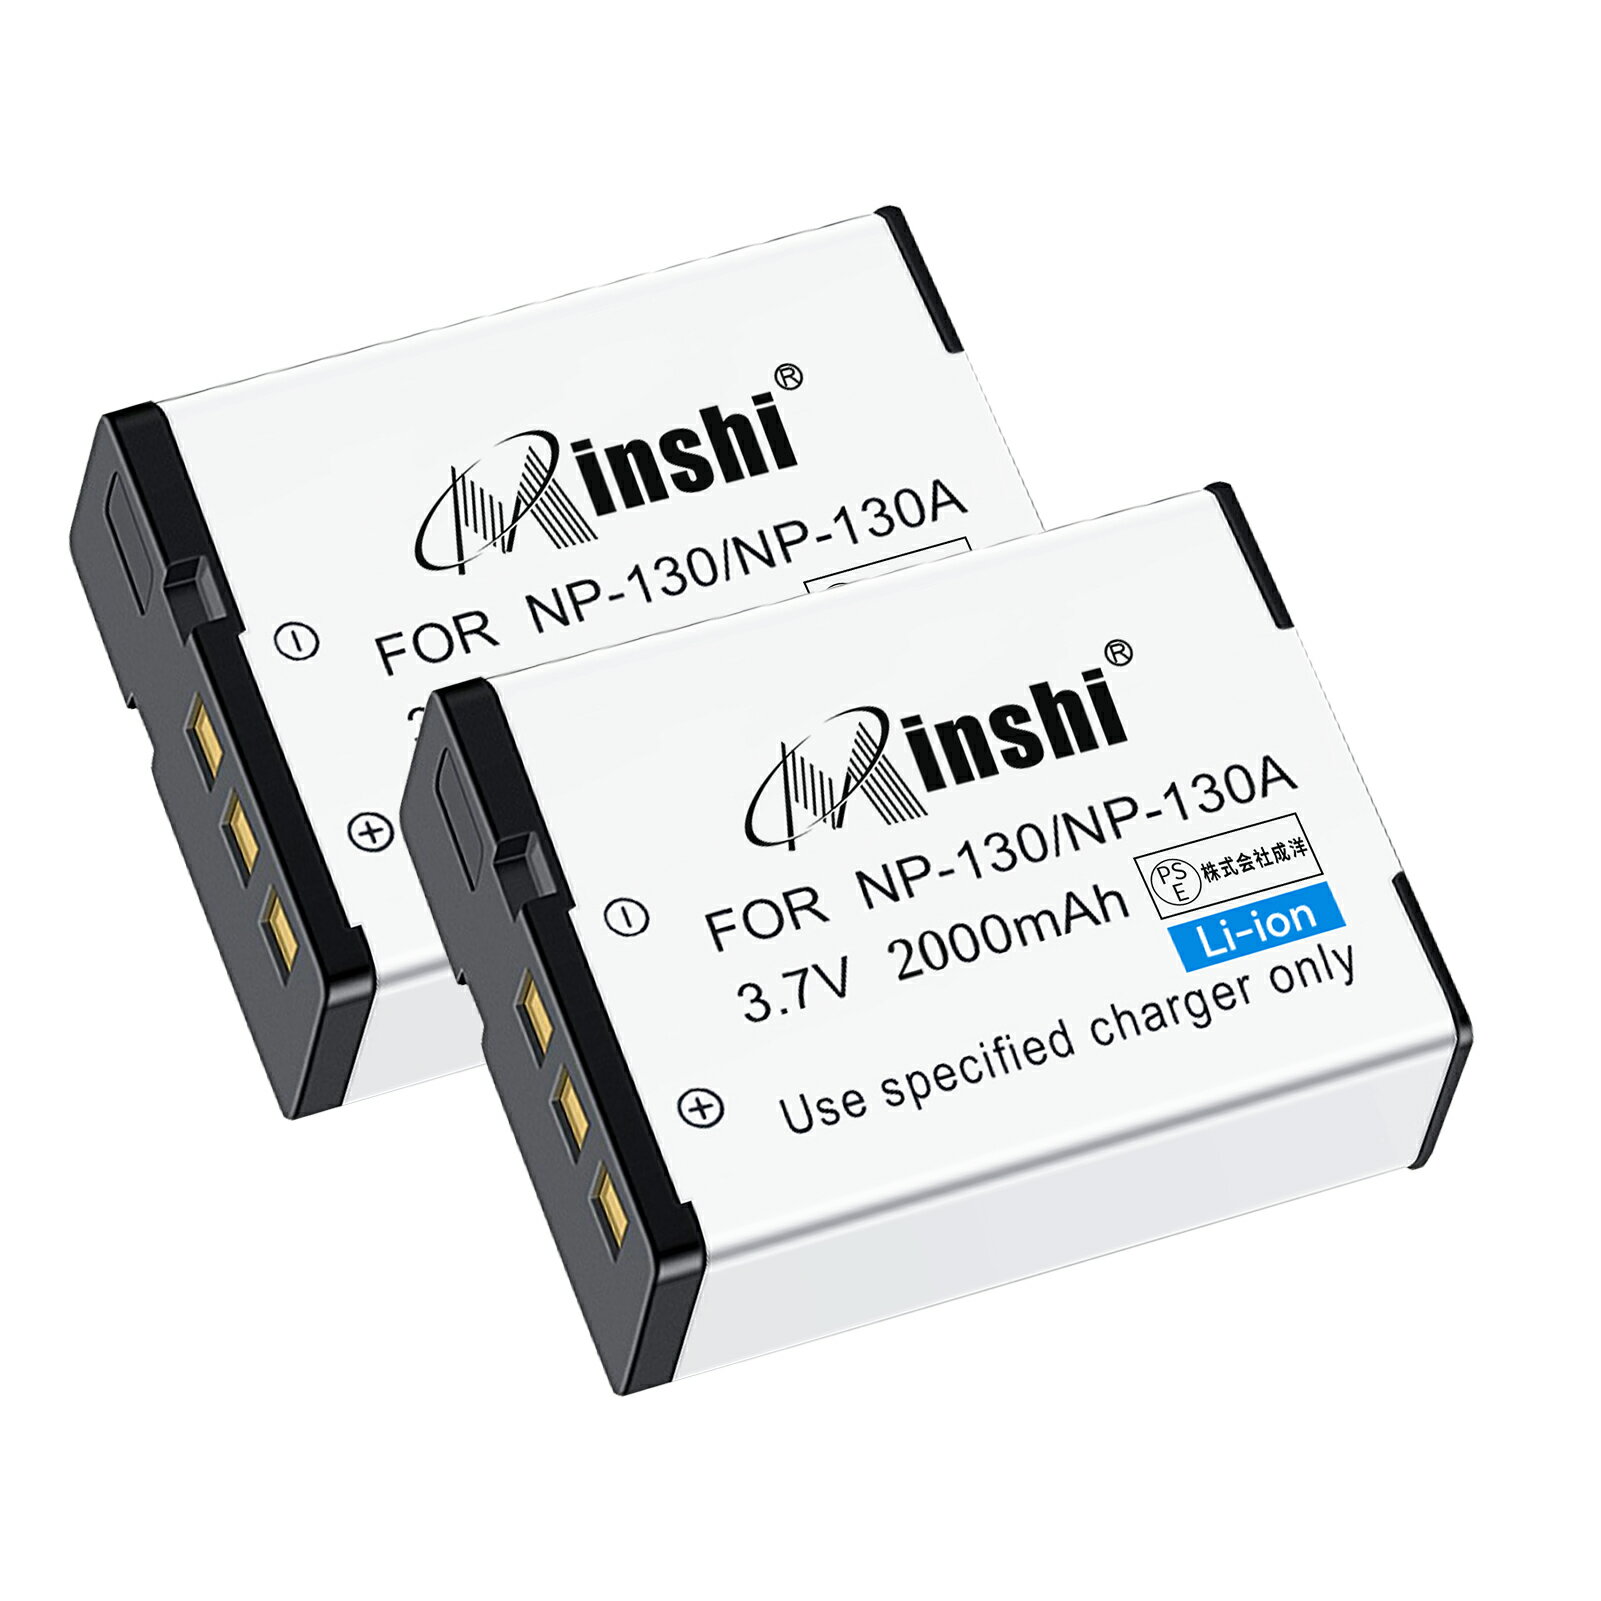 【2個セット】minshi 新品 Casio EX-ZR3000 互換バッテリー 2000mAh 高品質交換用リチャージブル カメラバッテリー リチウムイオンバッテリー デジタルカメラ デジカメ 充電池 PSE認証 1年間保証 予備バッテリー